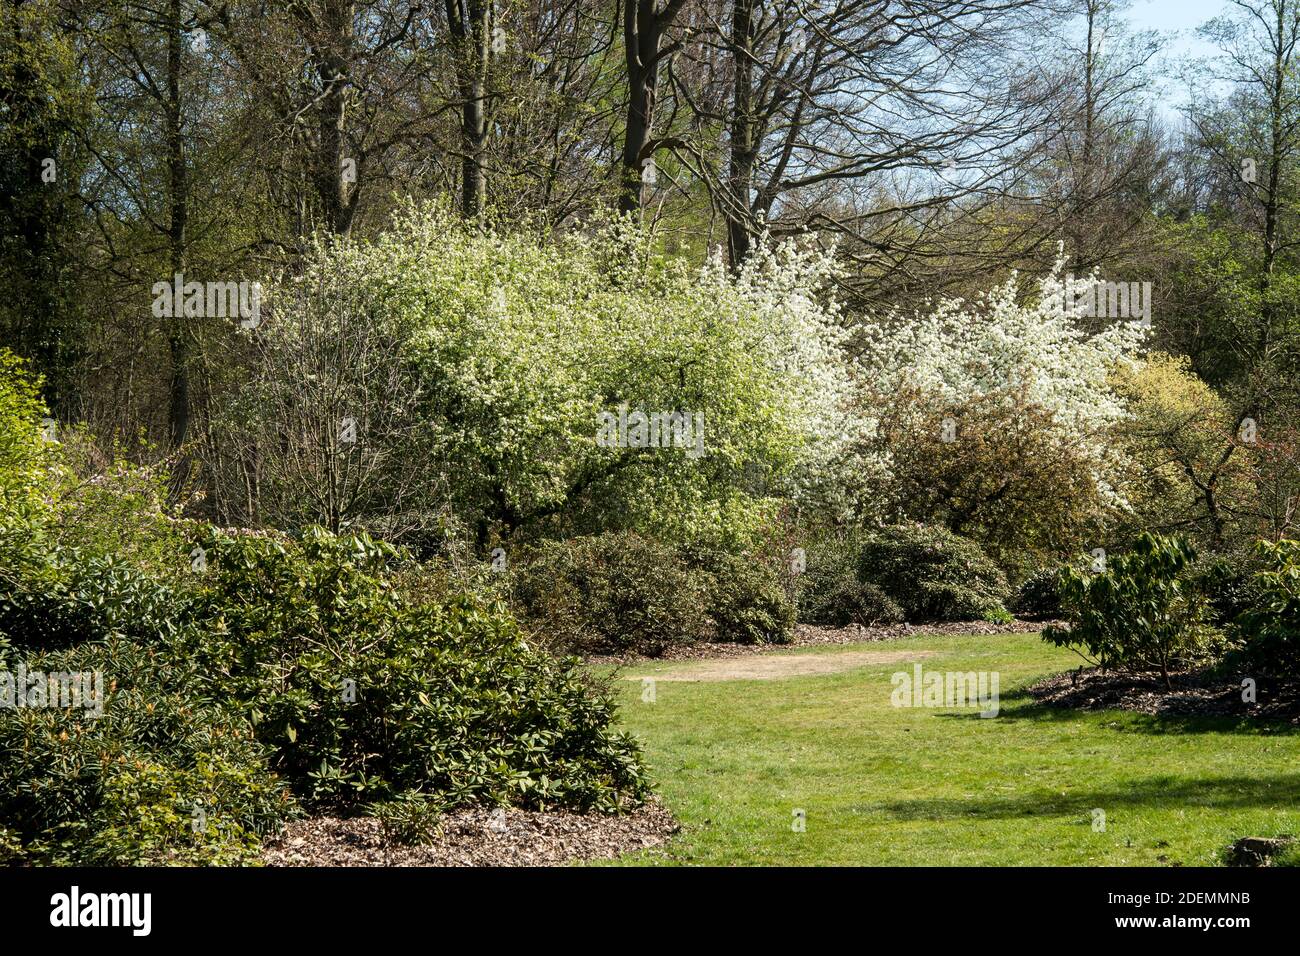 Flowering shrubs in spring Stock Photo